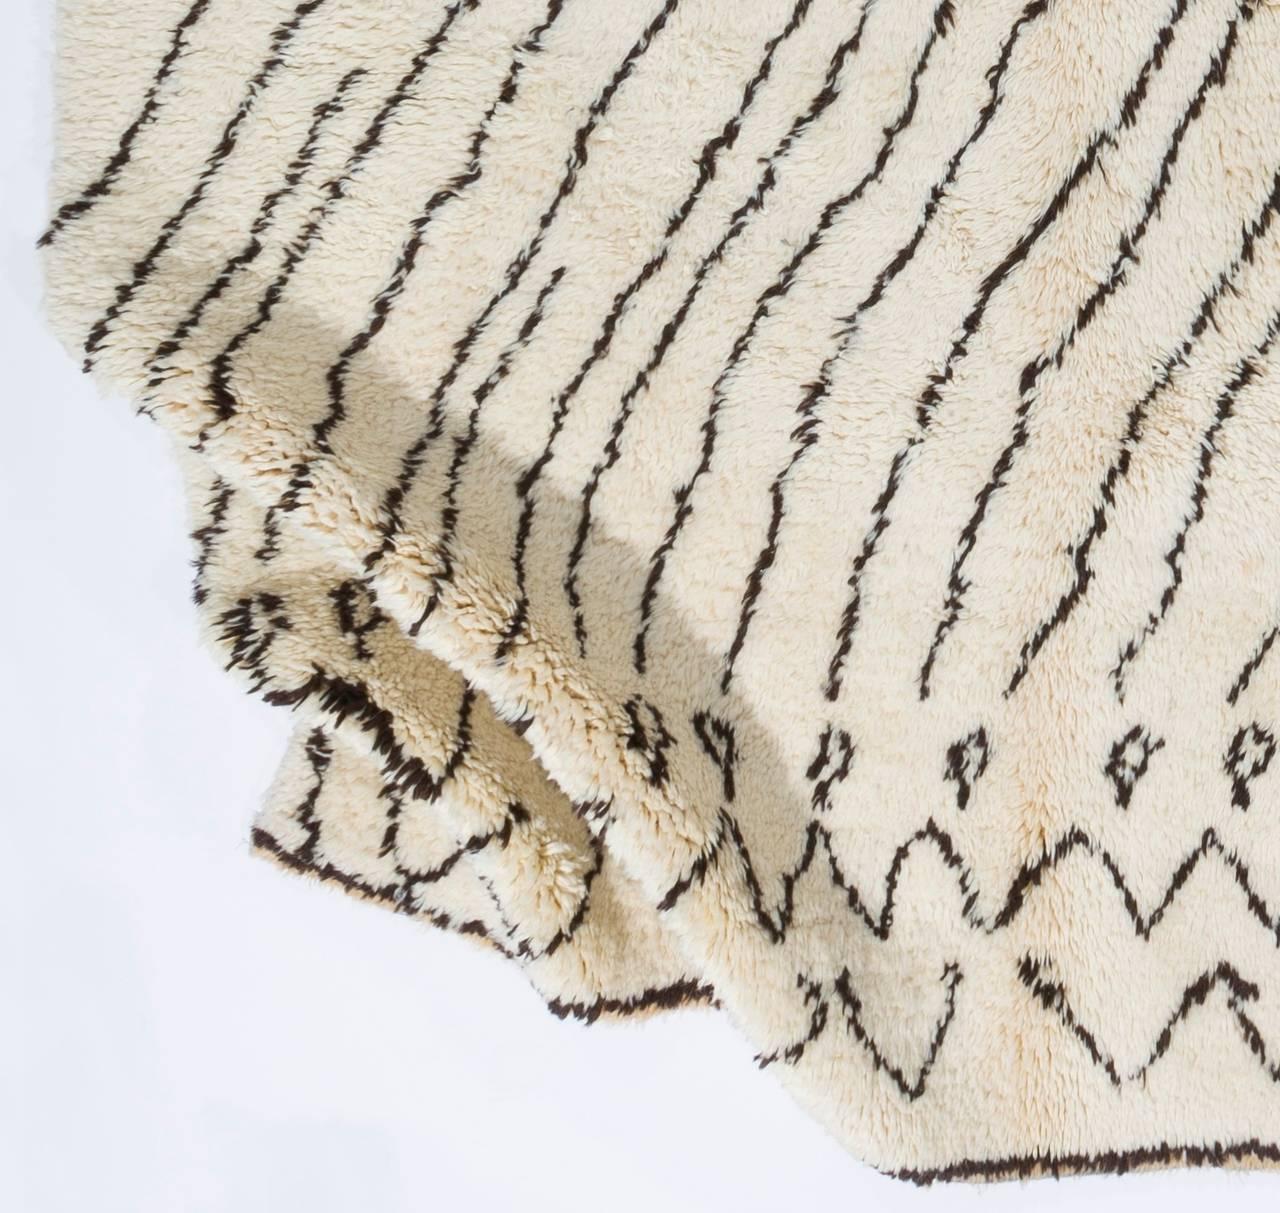 Ein handgeknüpfter marokkanischer Teppich mit weichem, gemütlichem Flor.
100% natürliche, ungefärbte, handgesponnene Schafwolle.
Maße: Es ist in den Maßen 6,6 x 10 ft (200 x 300 cm) und 4,1 x 6 ft (127 x 180 cm) erhältlich und sofort